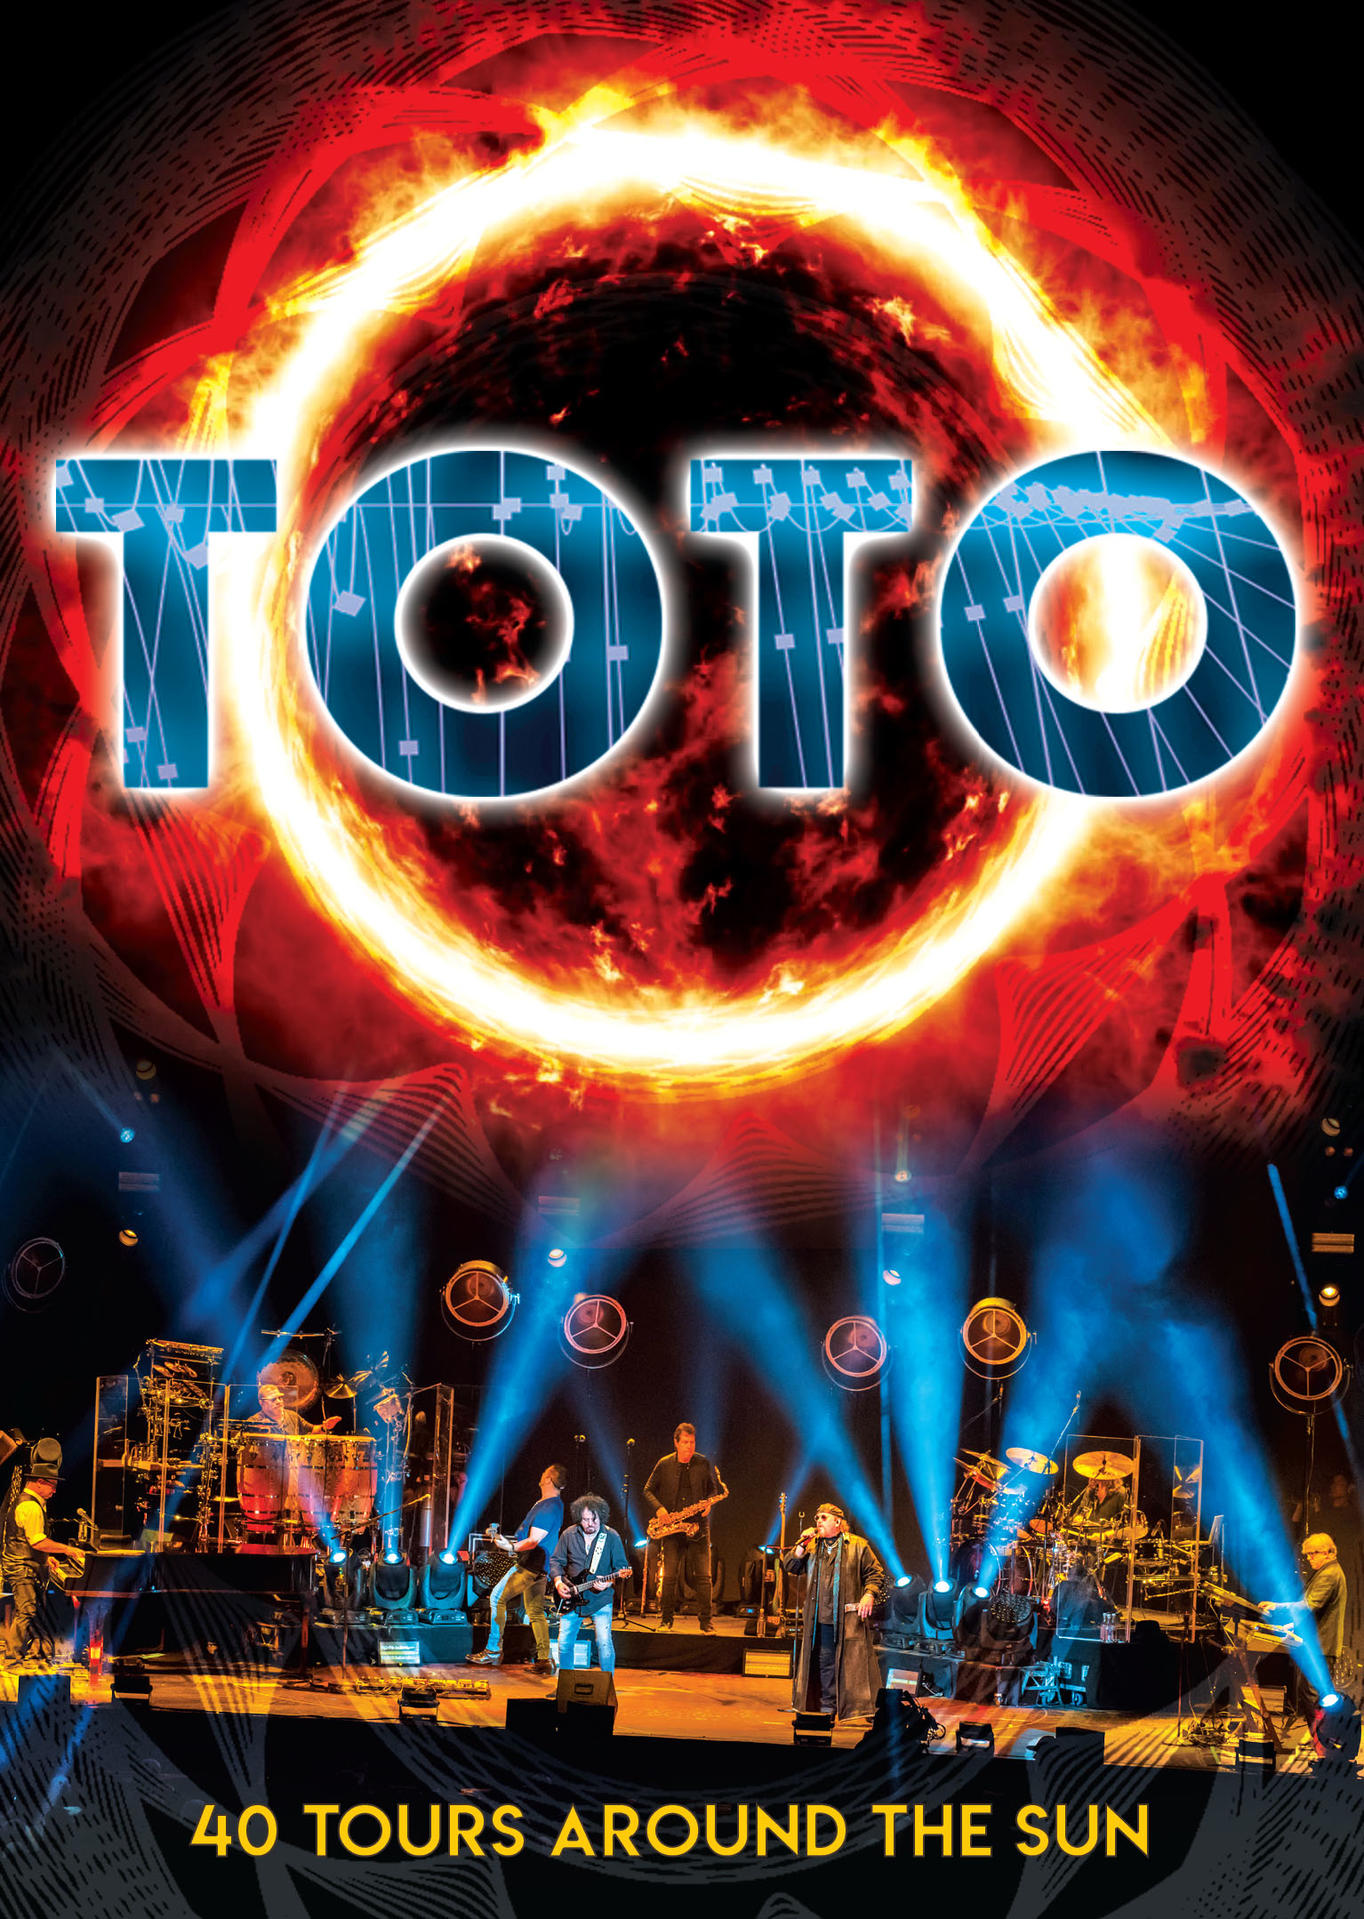 - (DVD) Toto - TOURS THE SUN AROUND 40